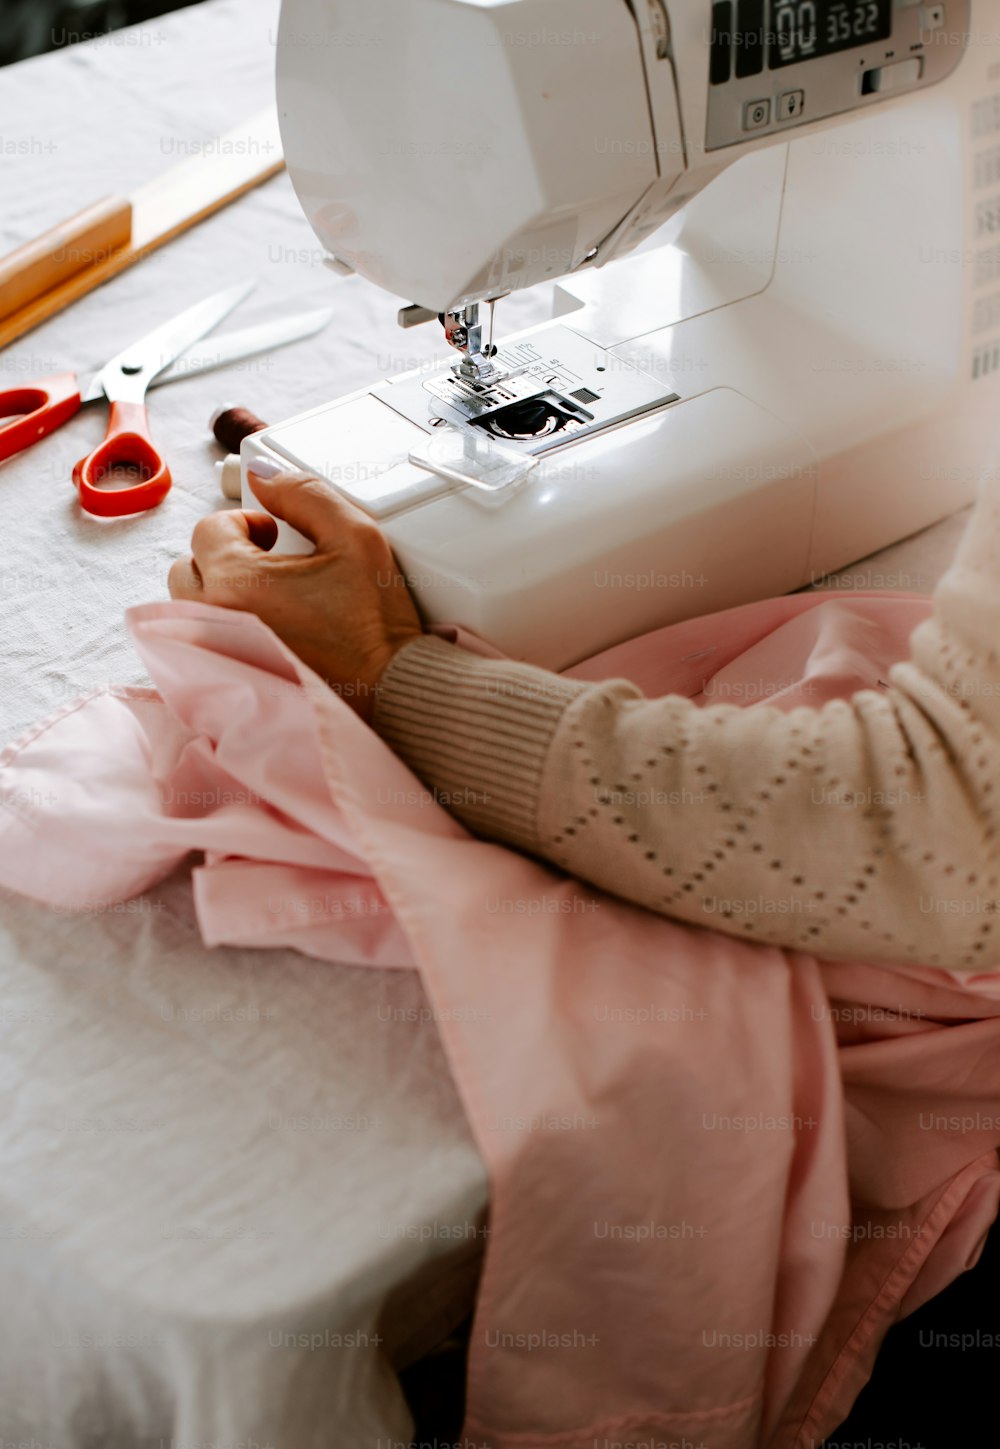 Una mujer usando una máquina de coser en una mesa